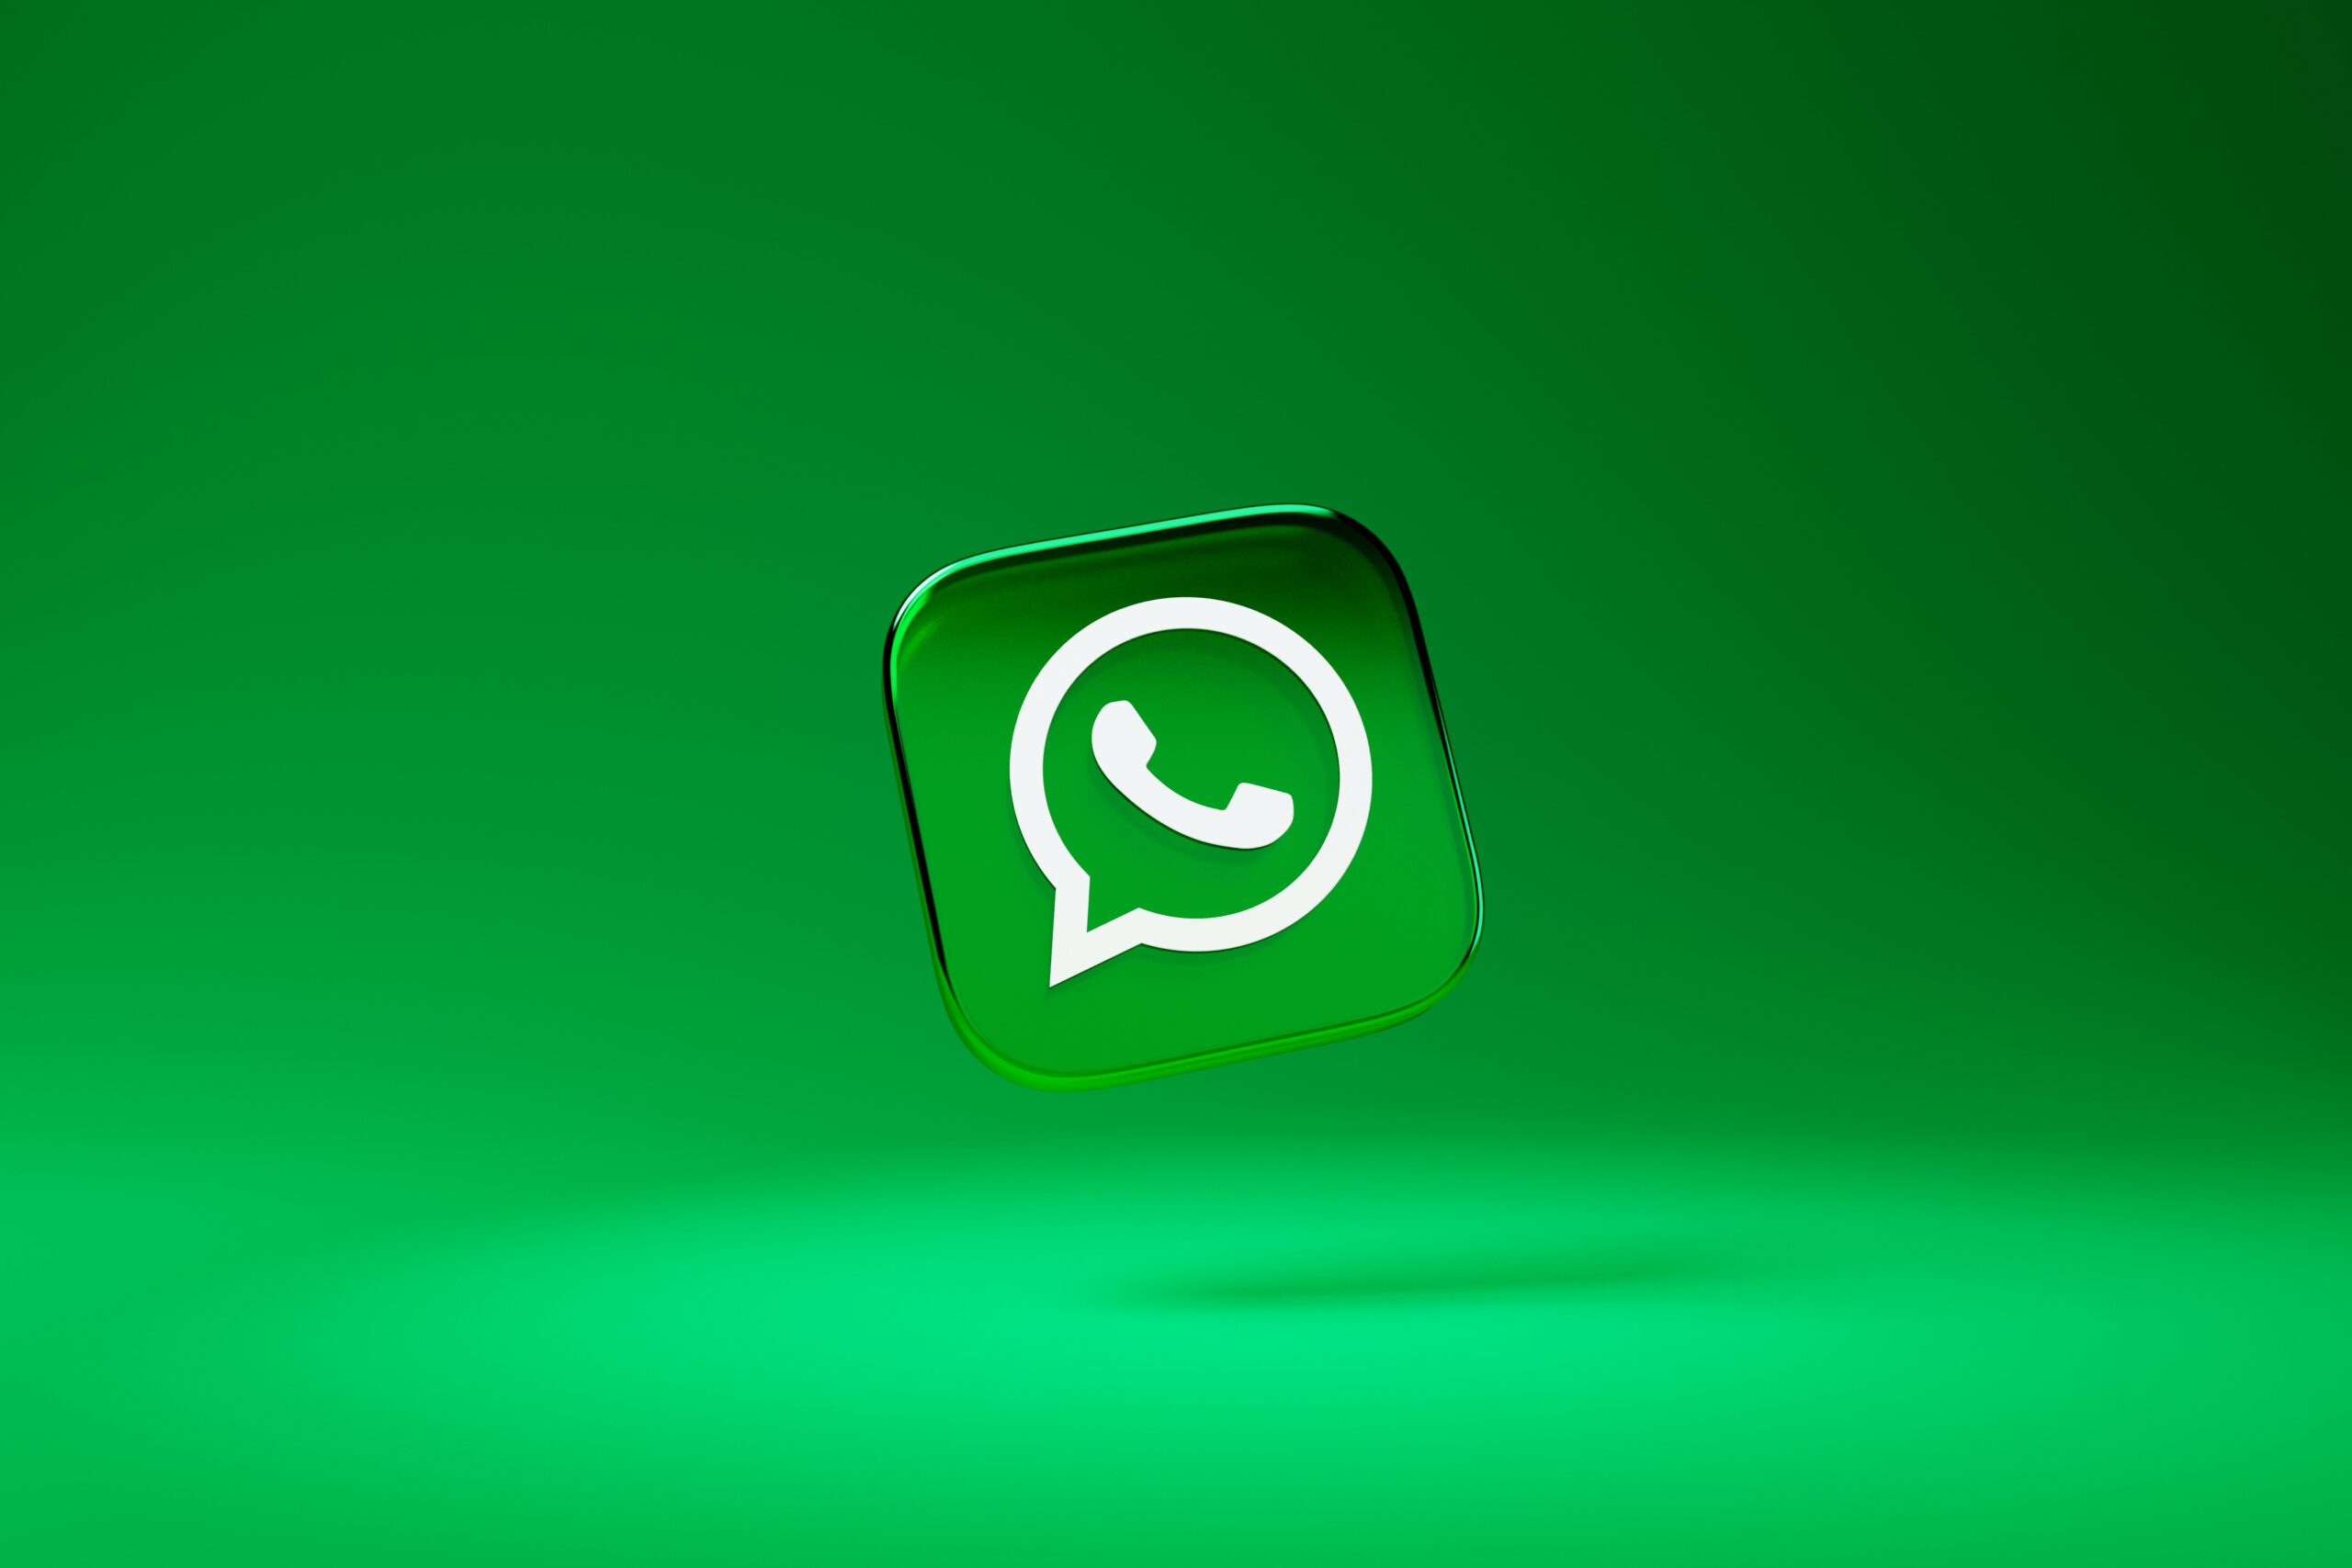 logo verde do Whatsapp dentro de uma caixa 3D com as arestas arredondadas em frente a um fundo verde do mesmo tom do logo